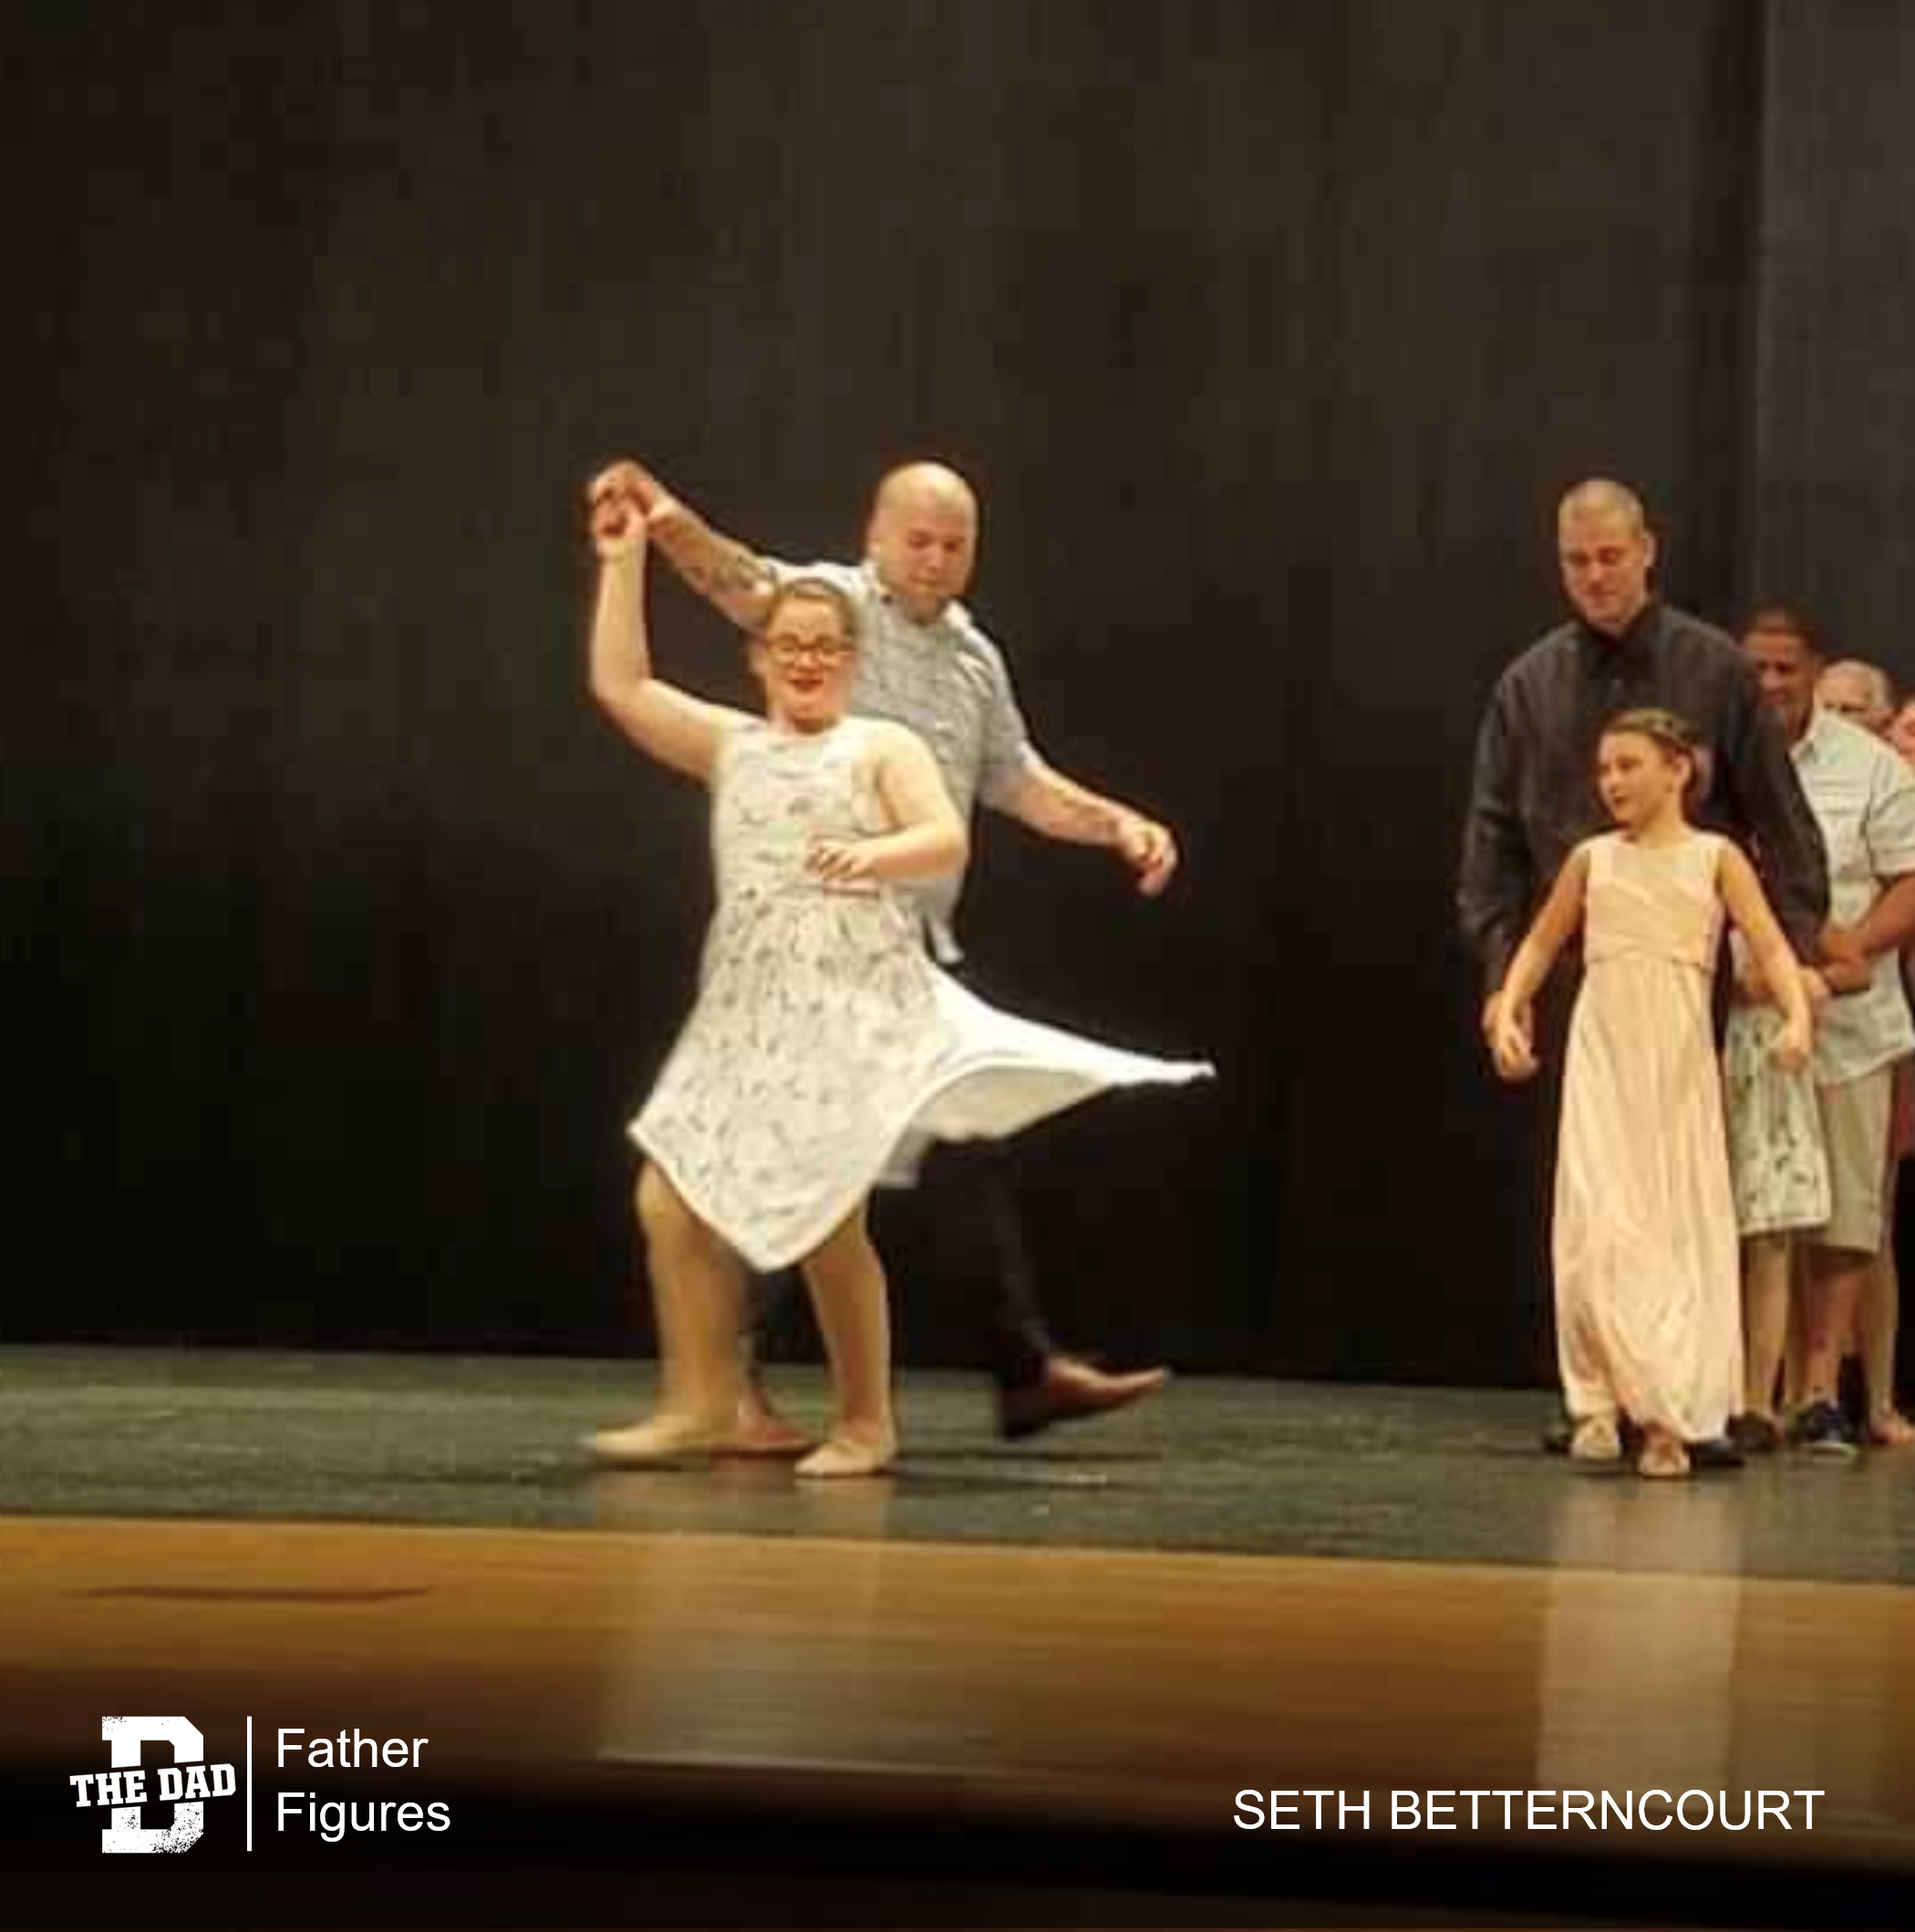 Father Figures: Dance Recital